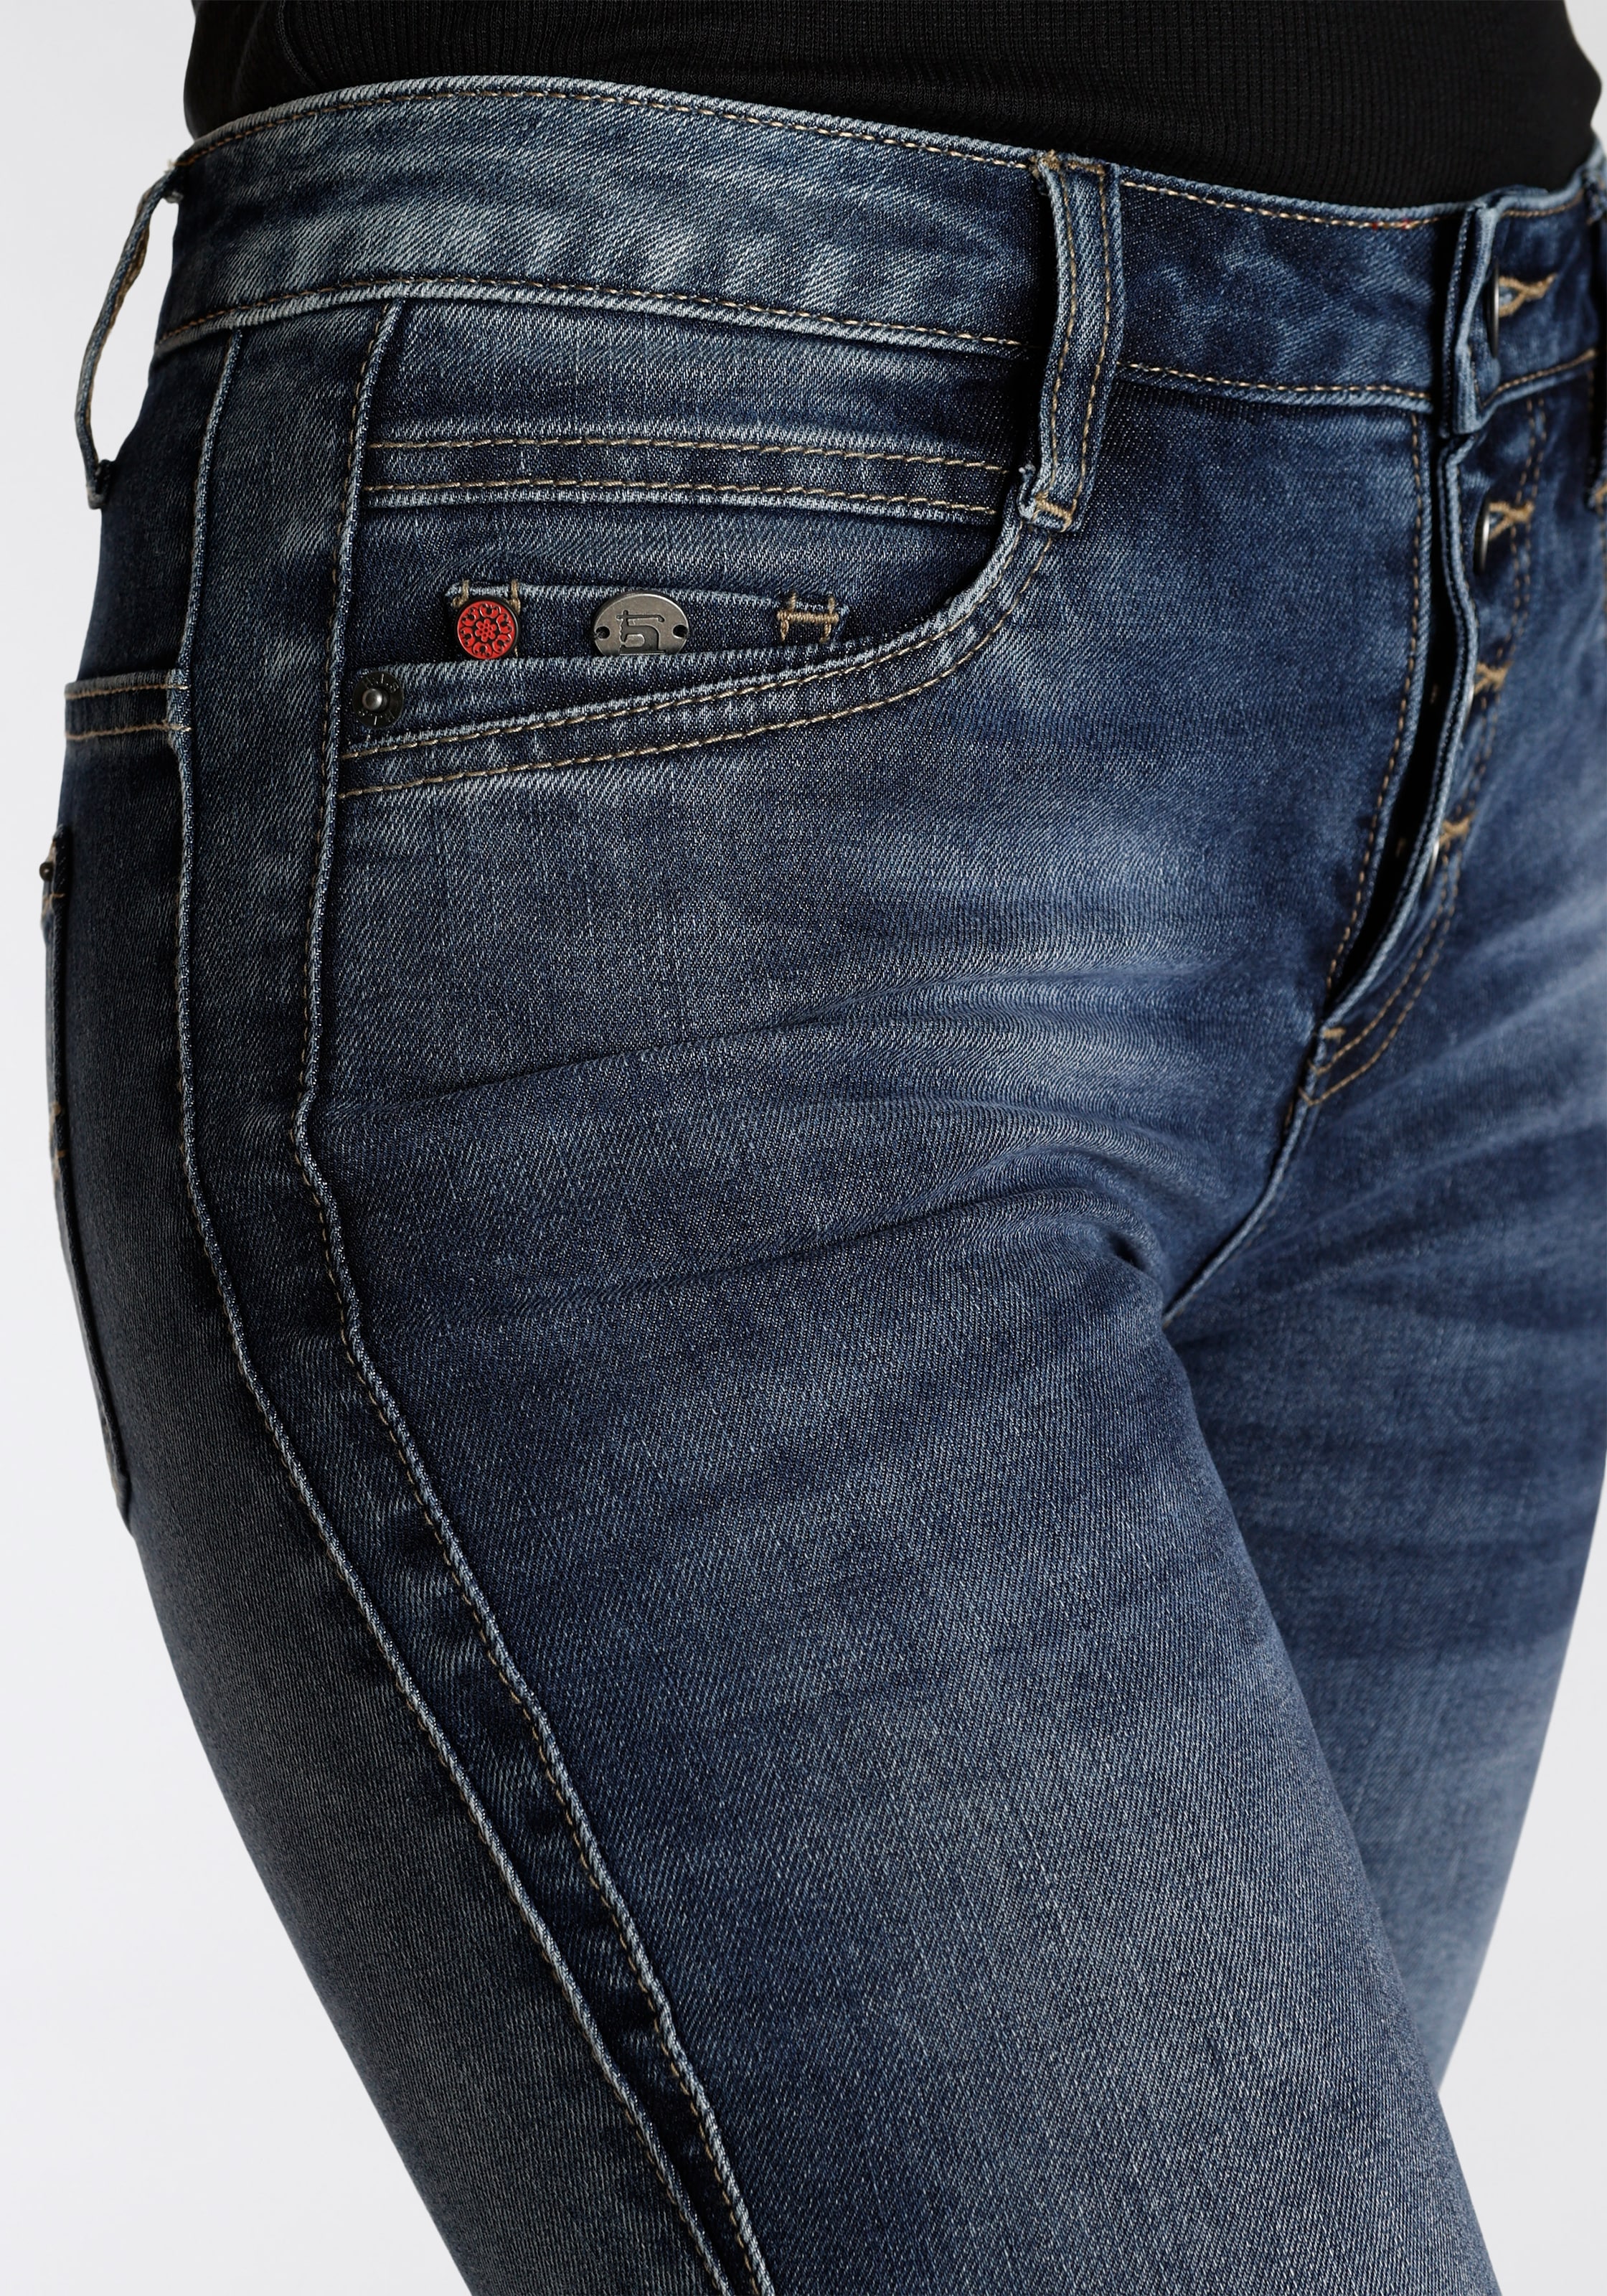 Wash bestellen 5-Pocket-Jeans ökologische, wassersparende durch Produktion online Ozon »macyHS«, H.I.S